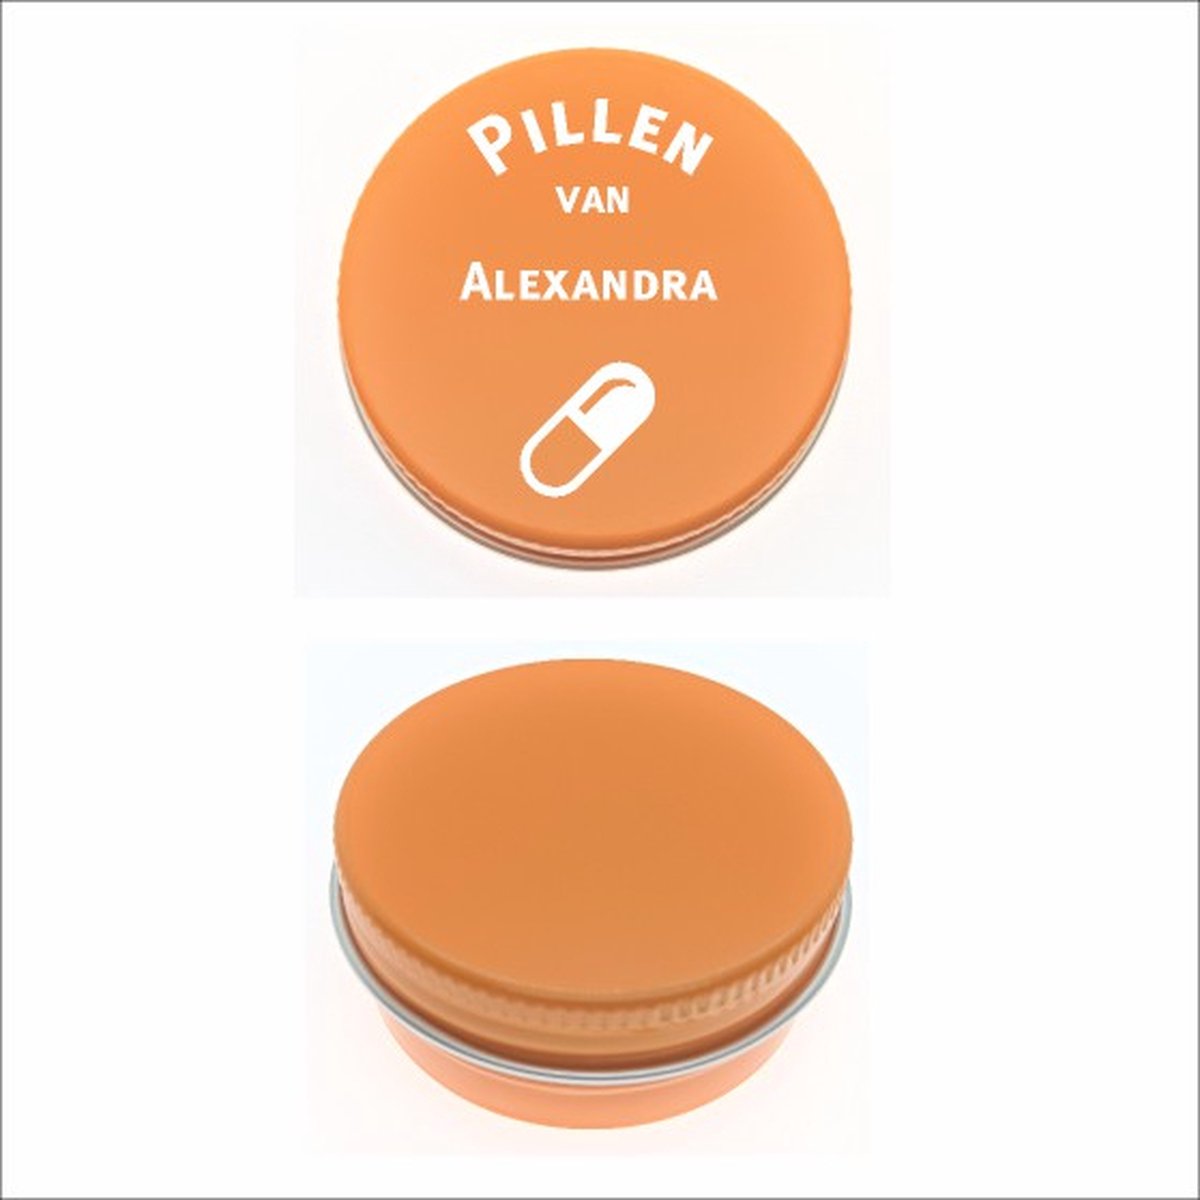 Pillen Blikje Met Naam Gravering - Alexandra